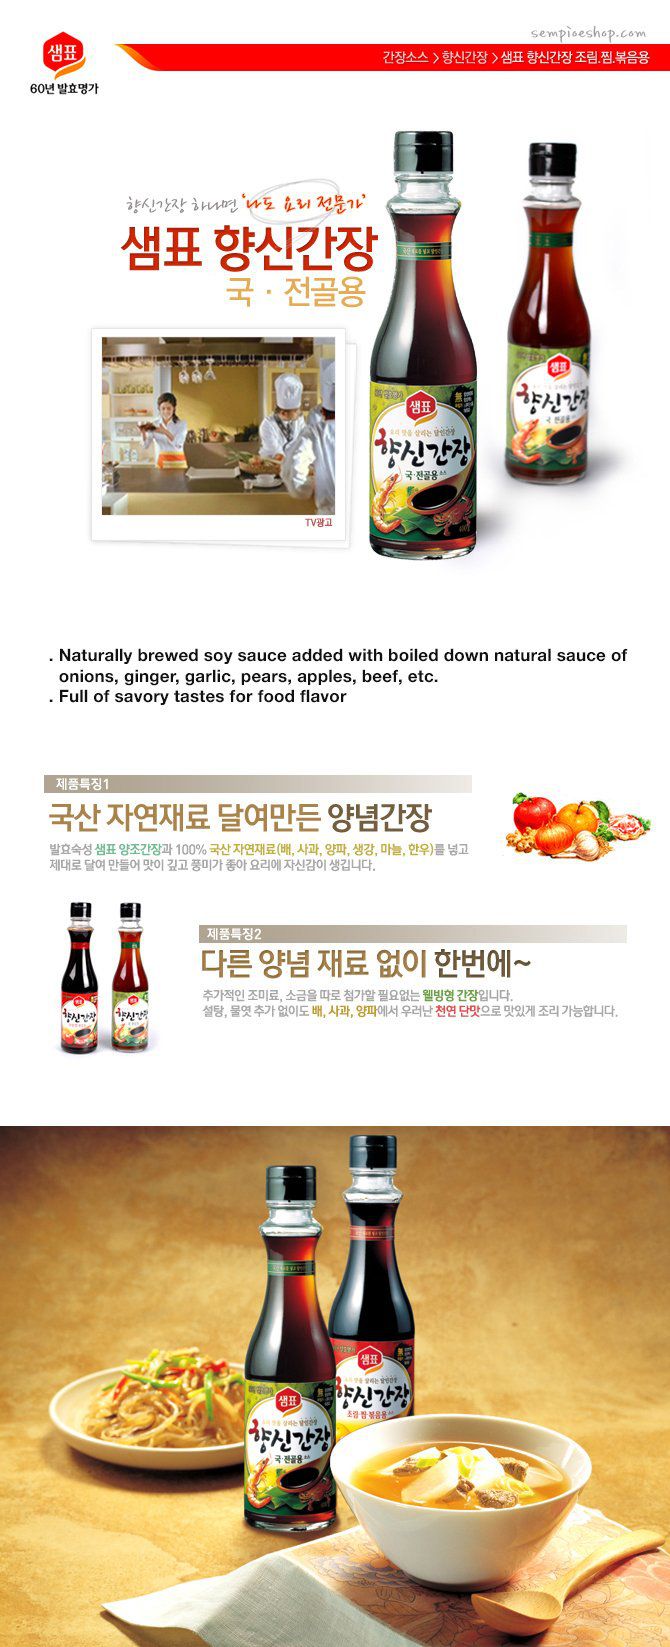 韓國食品-[샘표] 향신간장국[국/전골용] 400g